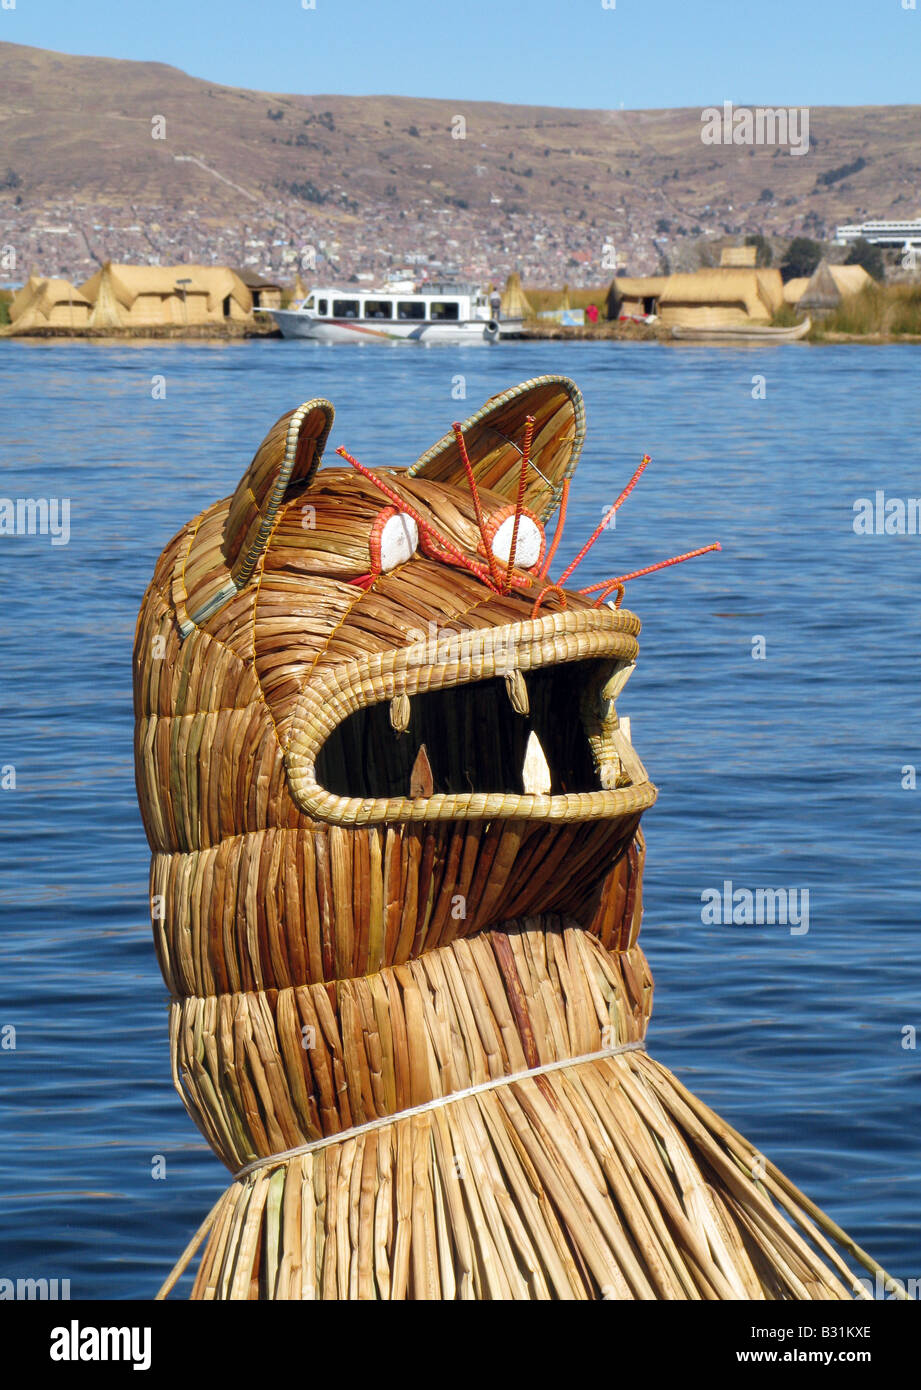 La testa del montante della barca del popolo Uros un pre-Inca le persone che vivono sul self-stile reed flottante isole del lago Titicaca in Perù Foto Stock